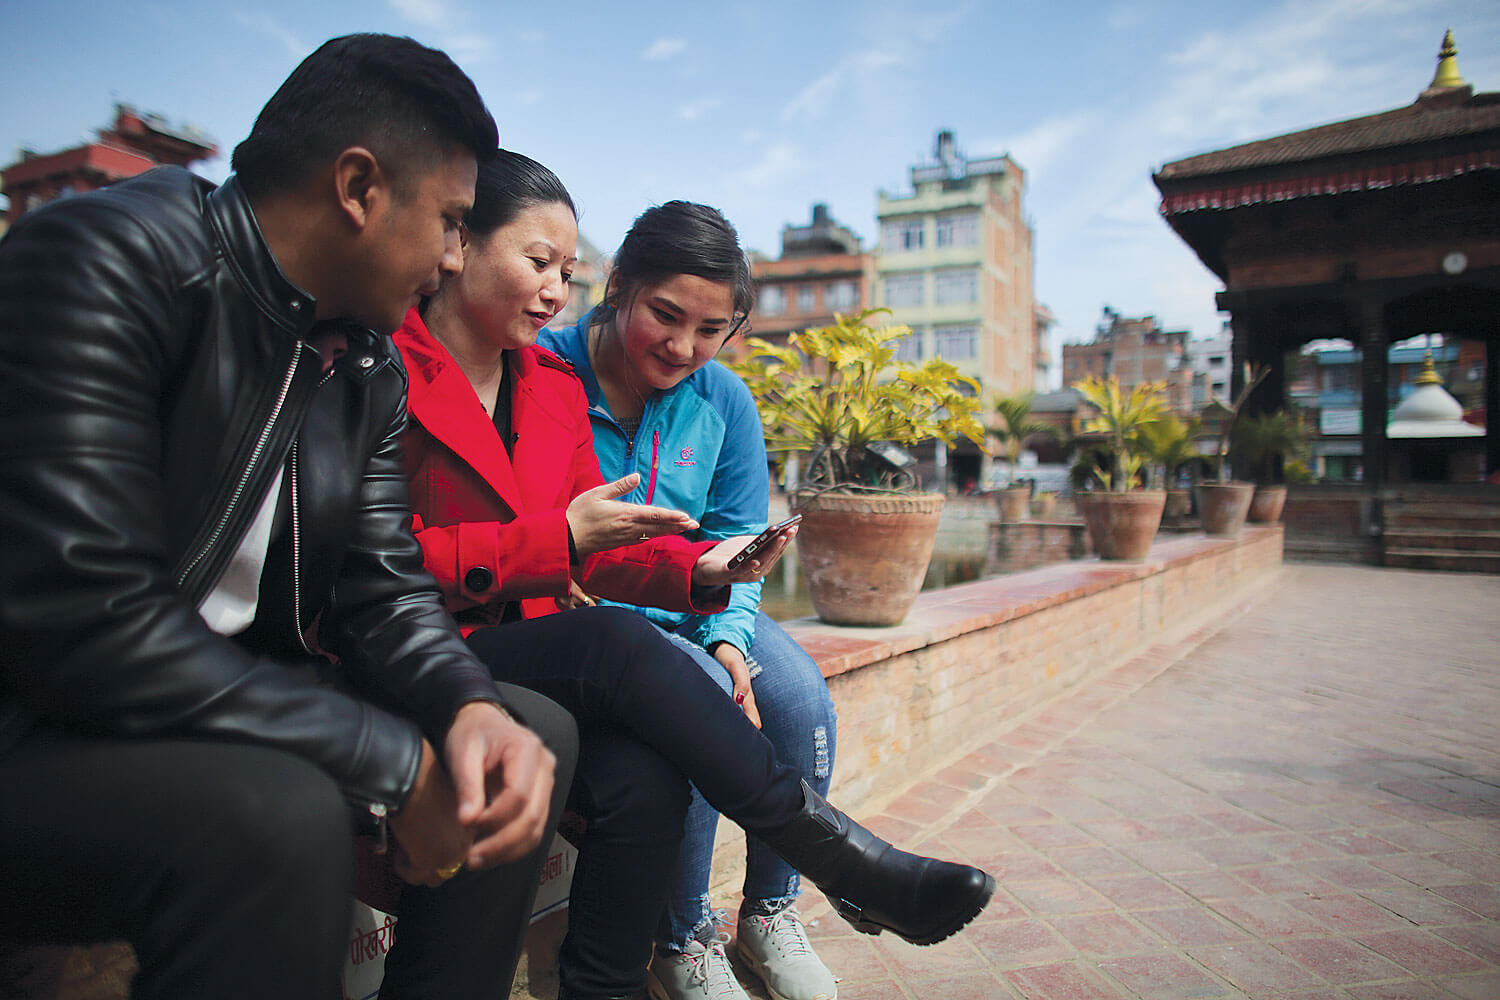 यूट्युबमा नेपाली मोबाइल प्रयोगकर्ताको बढ्दो आकर्षण